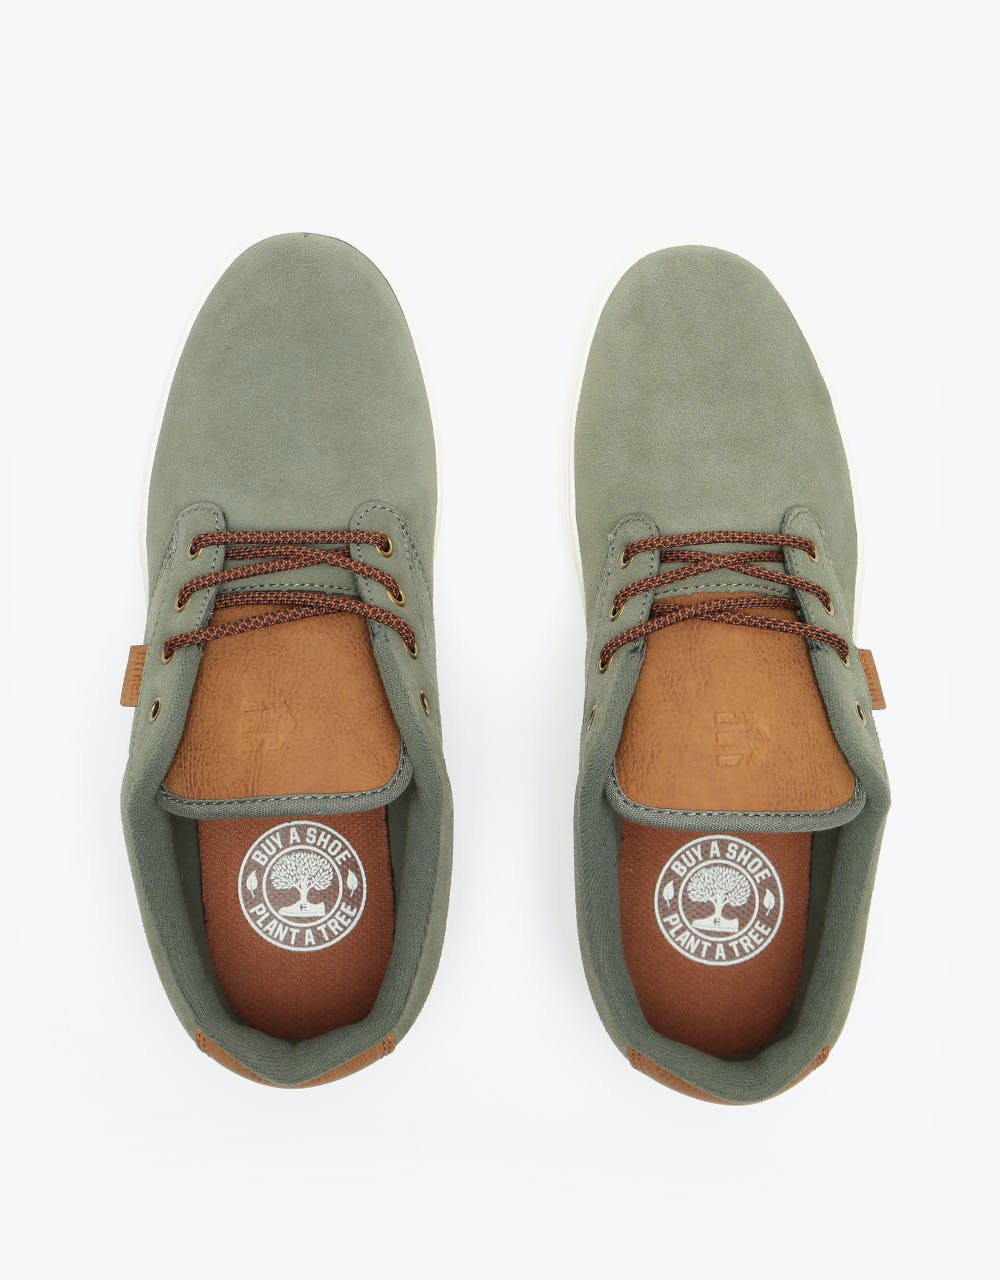 Etnies Jameson 2 Skate Shoes - Olive Suede